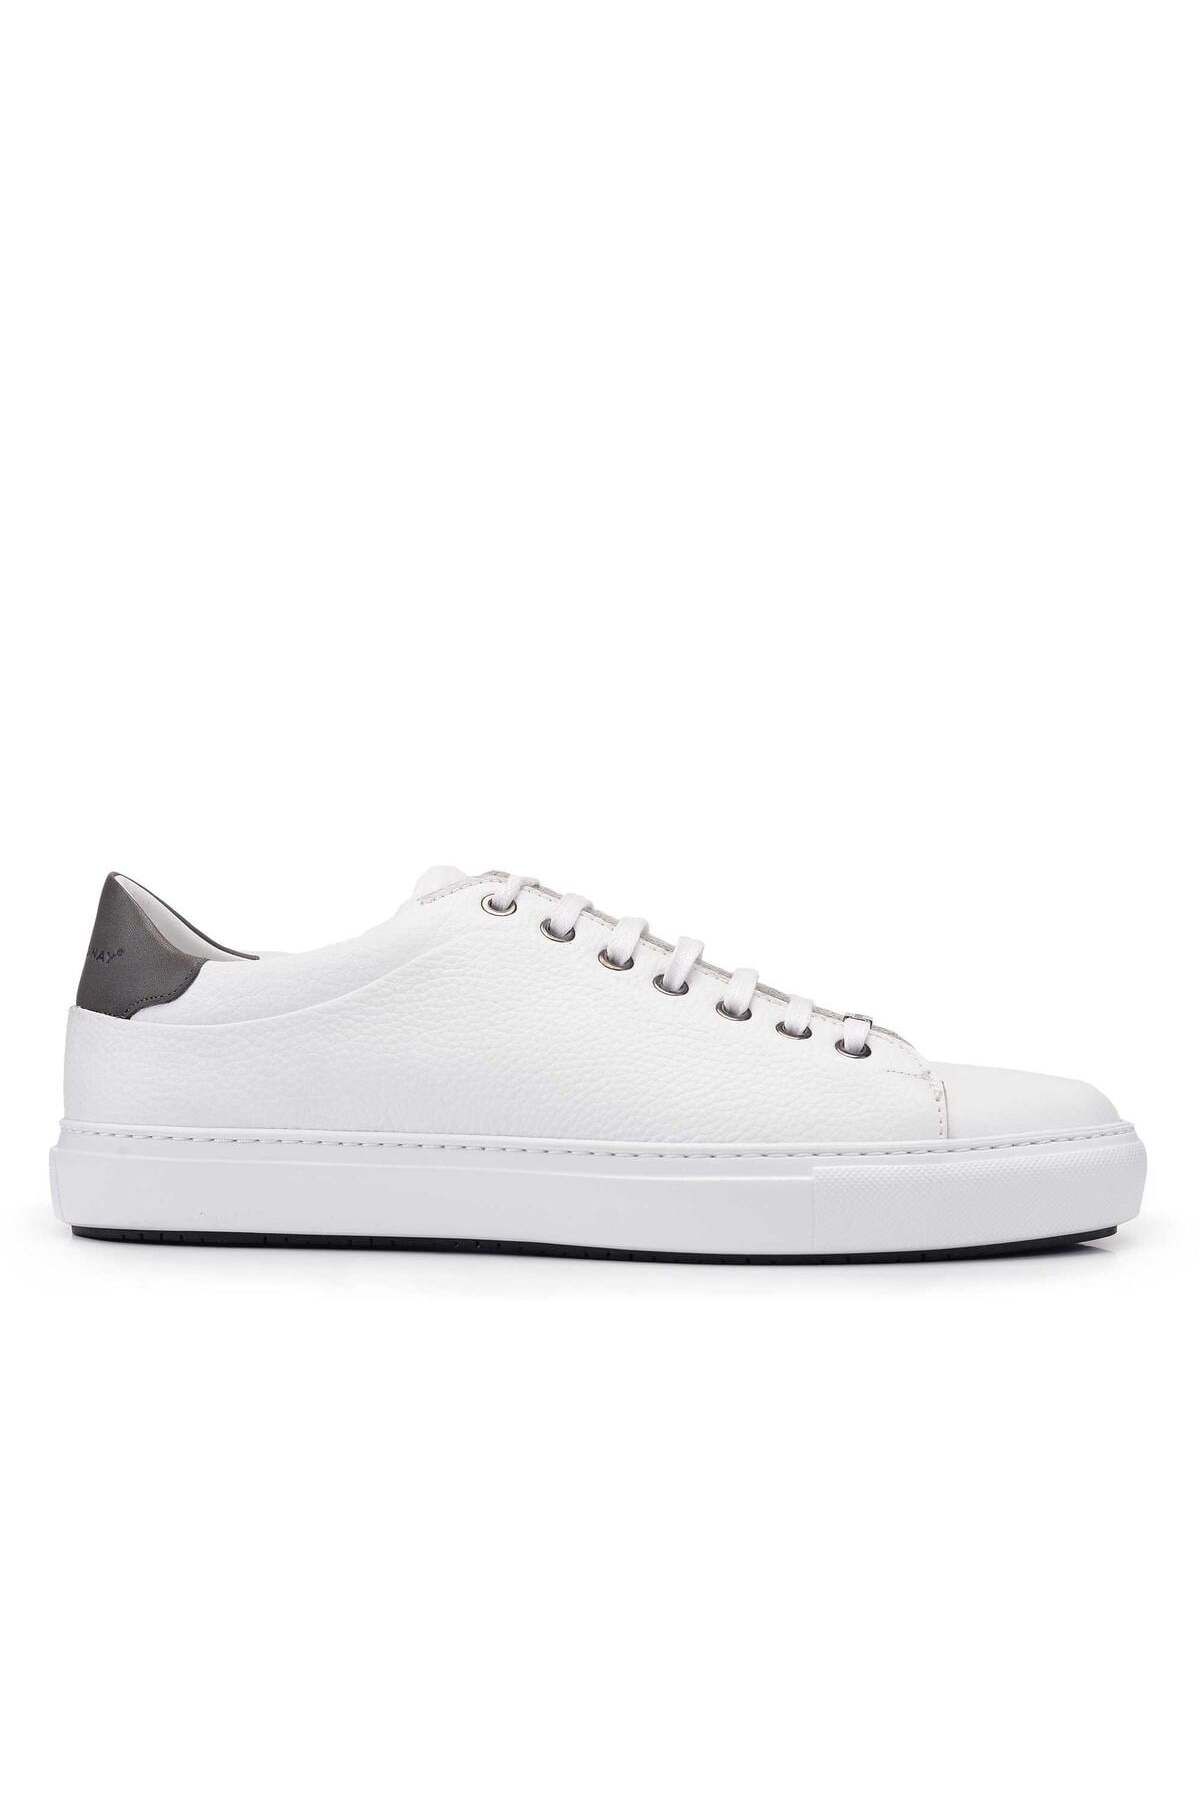 Nevzat Onay Hakiki Deri Beyaz Sneaker Erkek Ayakkabı -11195-